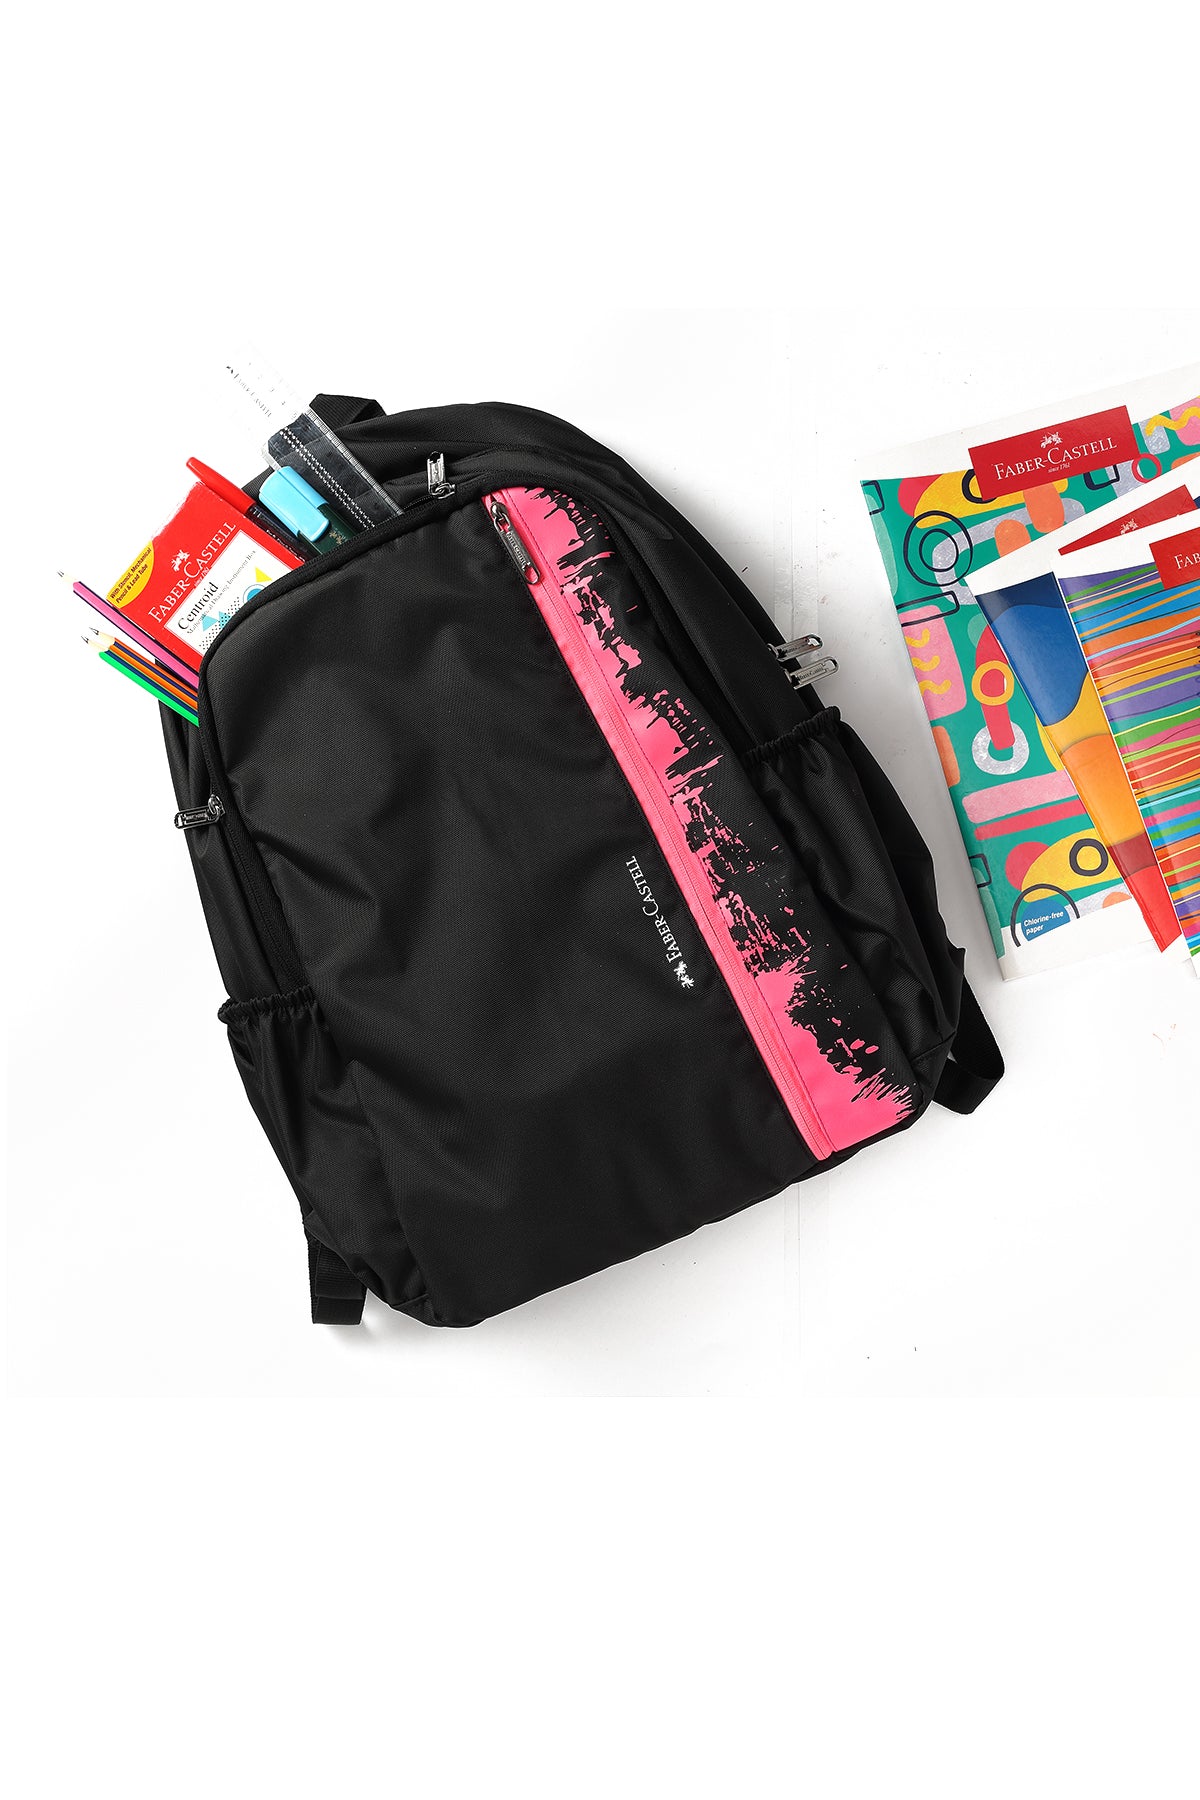 Neon Splash Kids School Bag